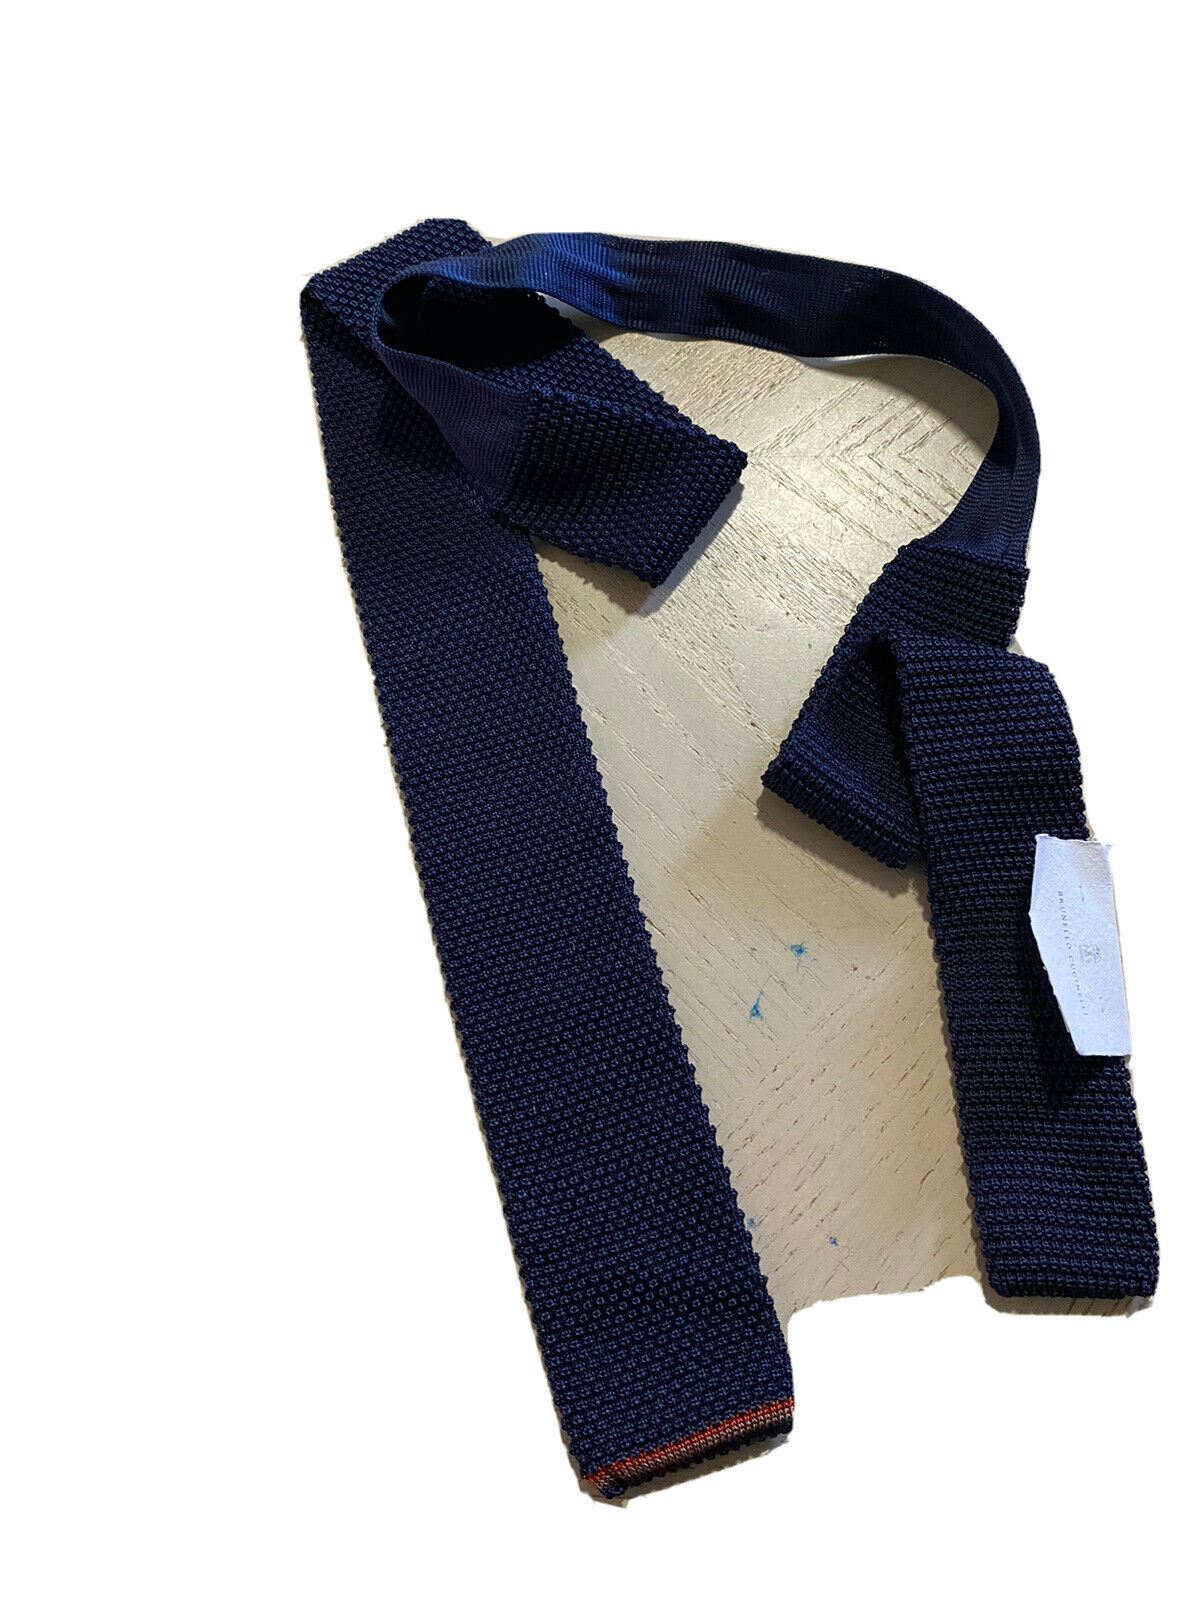 New $280 Brunello Cucinelli Textured Silk Tie Navy Italy